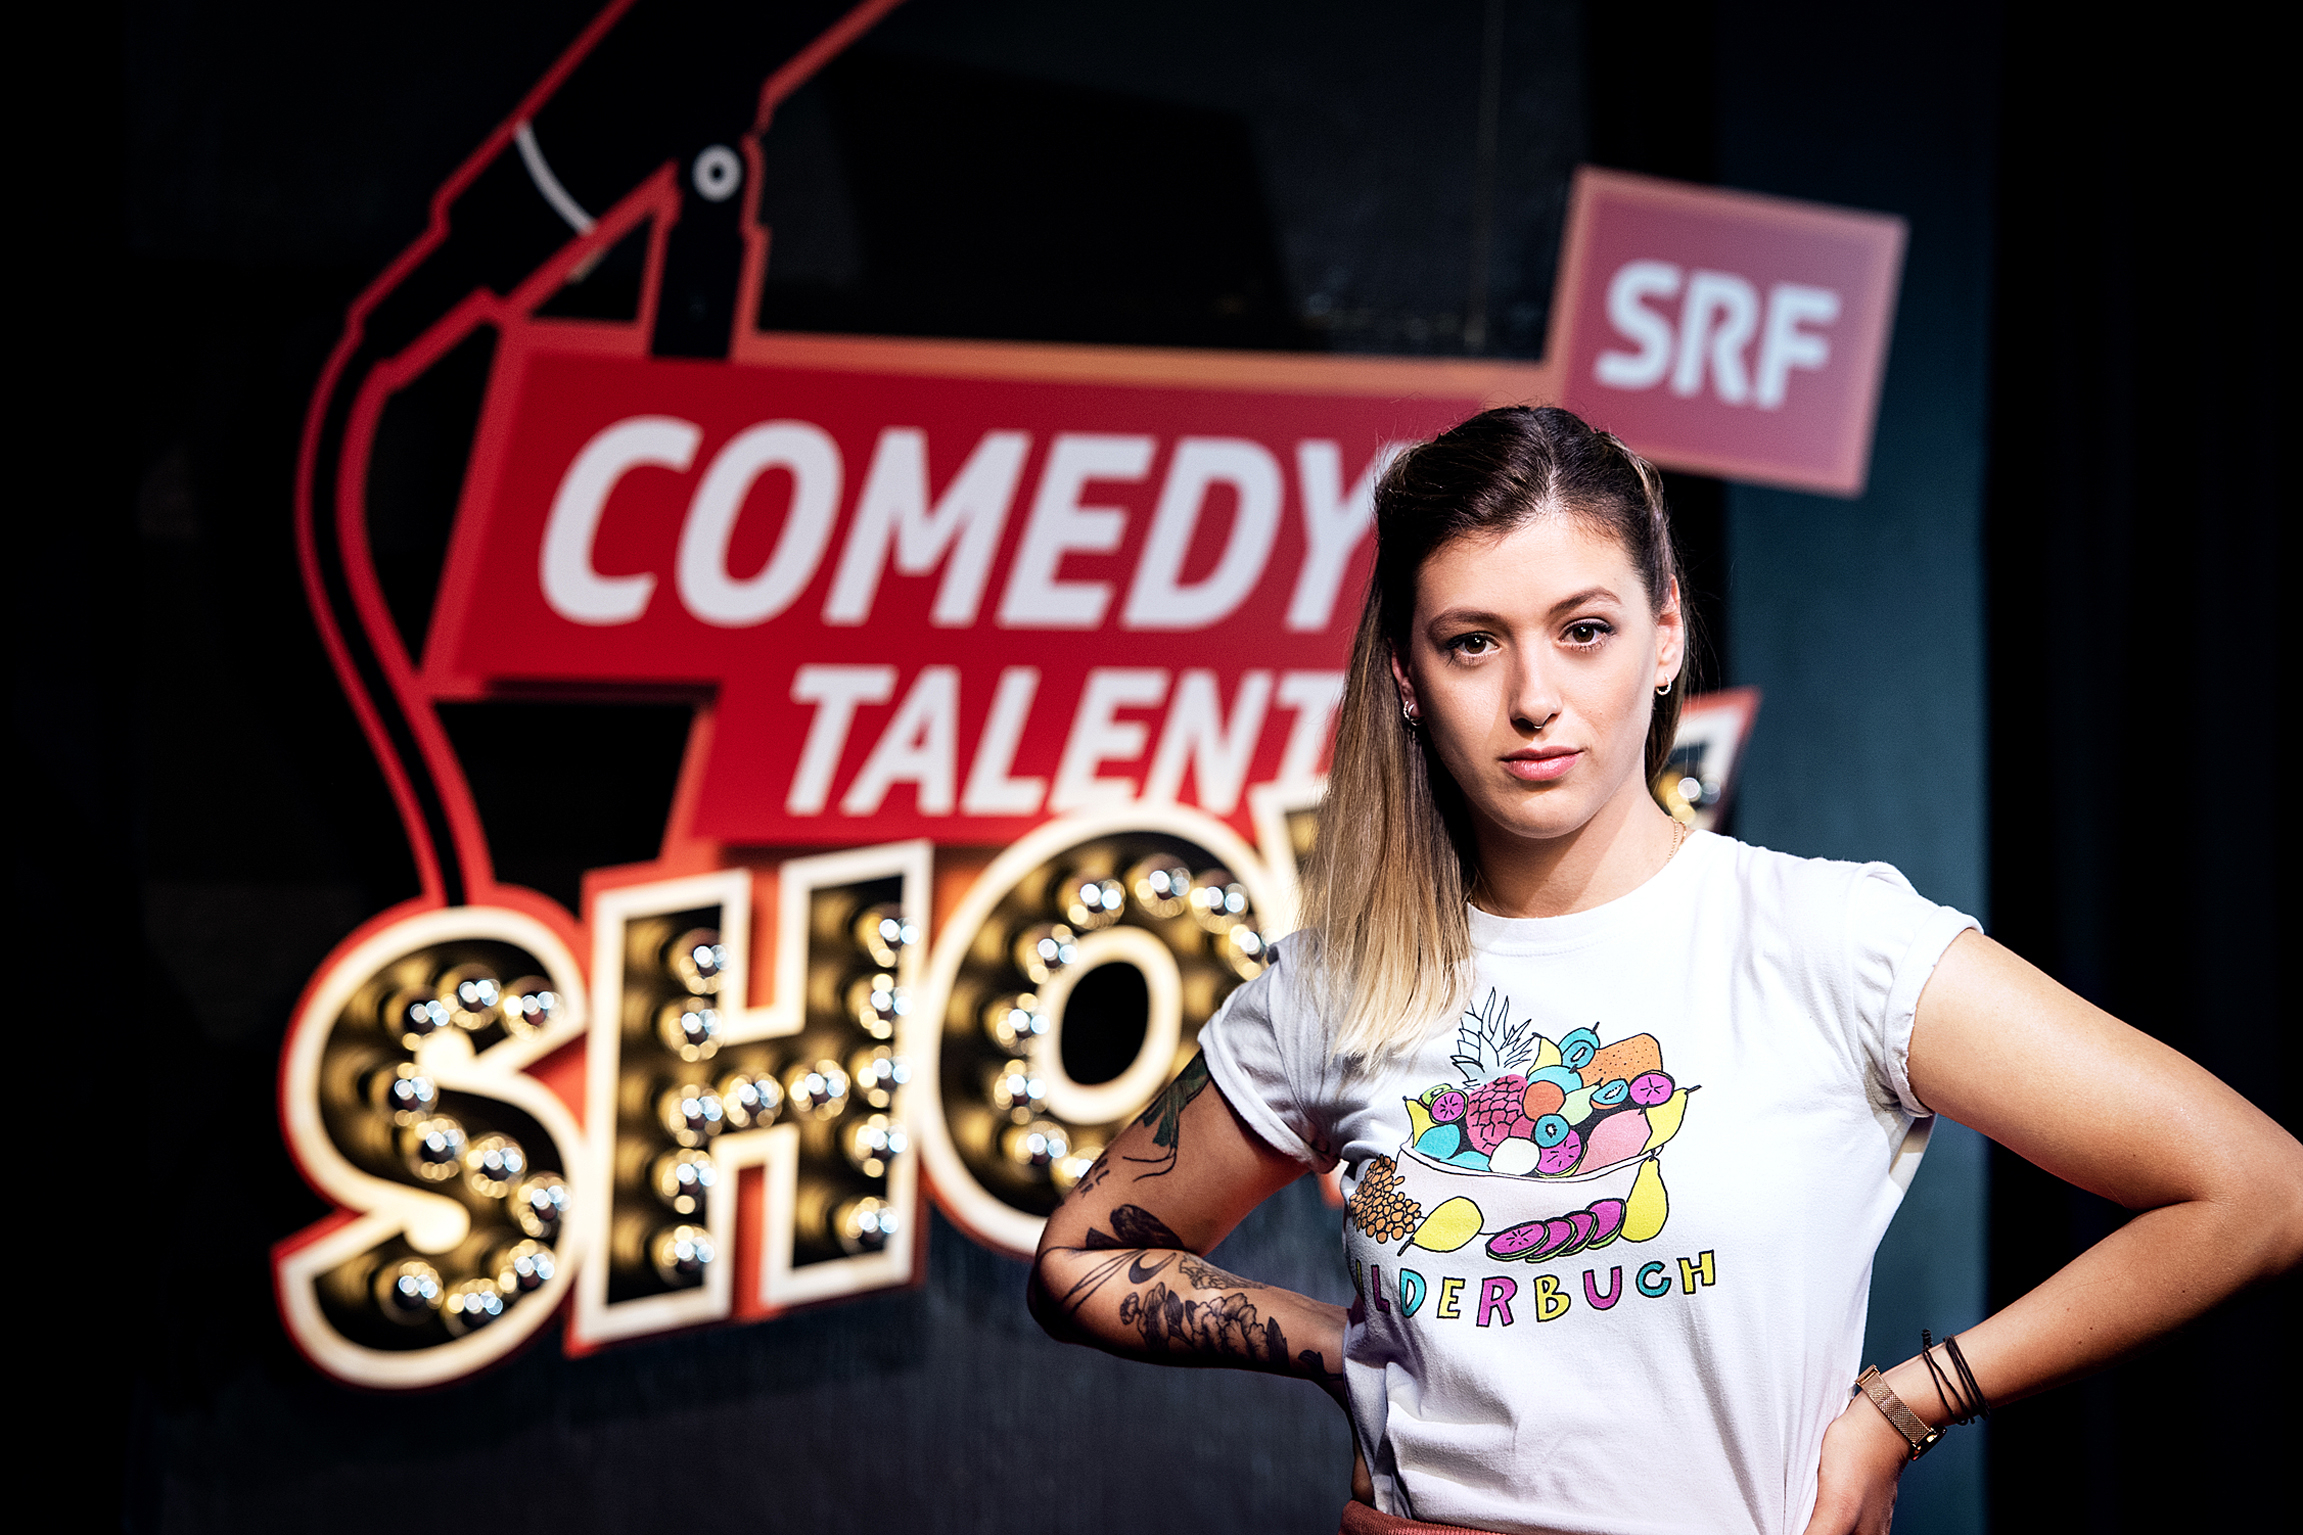 Comedy Talent Show Sendung 1 2019 Moderatorin Lisa Christ